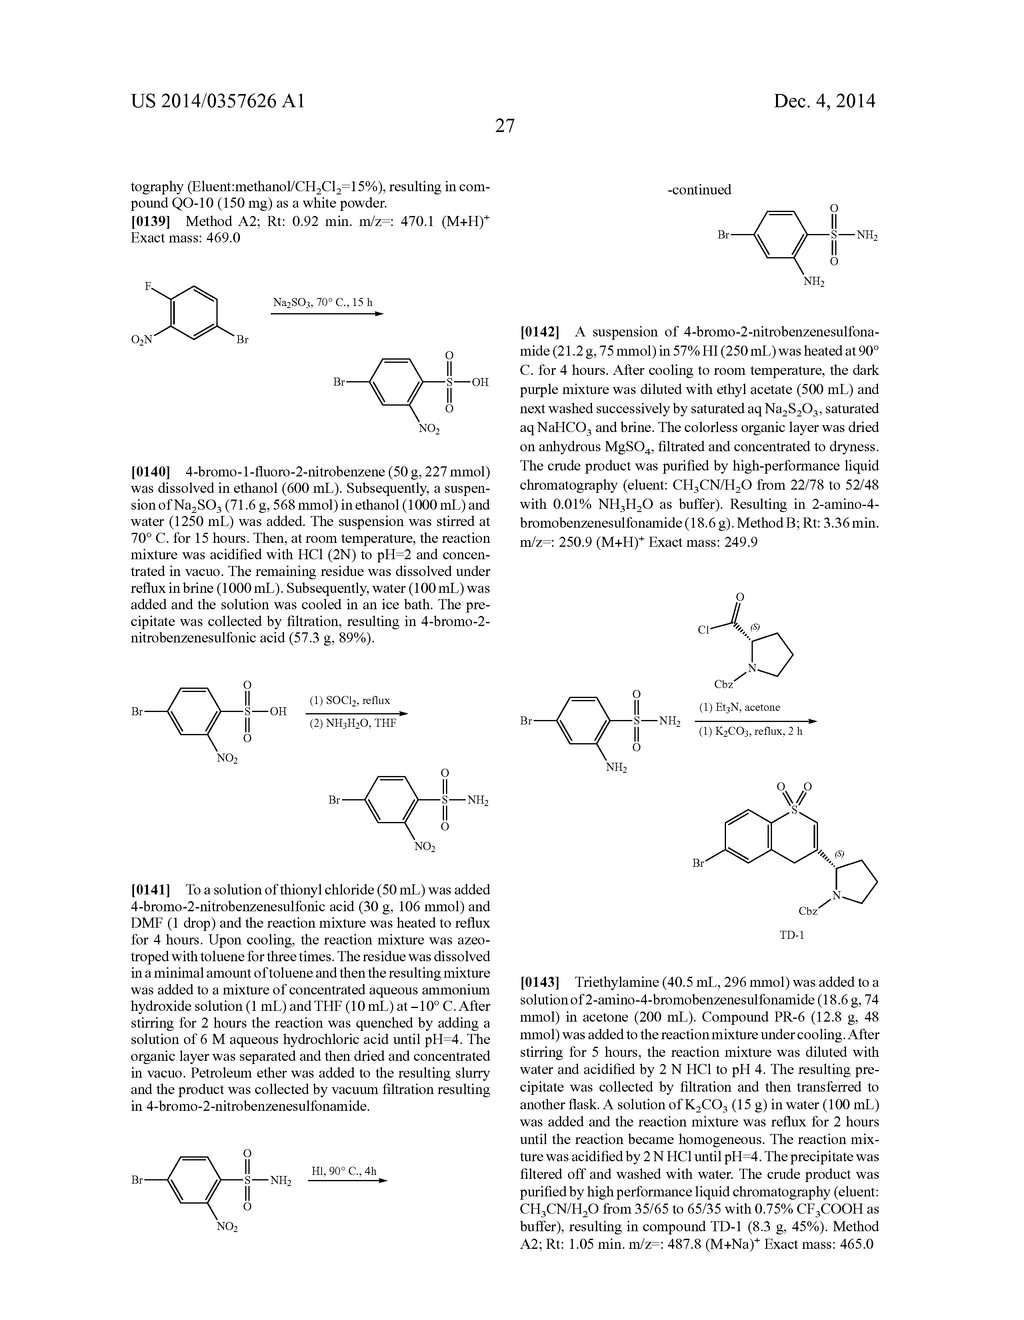 Hetero-Bicyclic Derivatives As HCV Inhibitors - diagram, schematic, and image 28